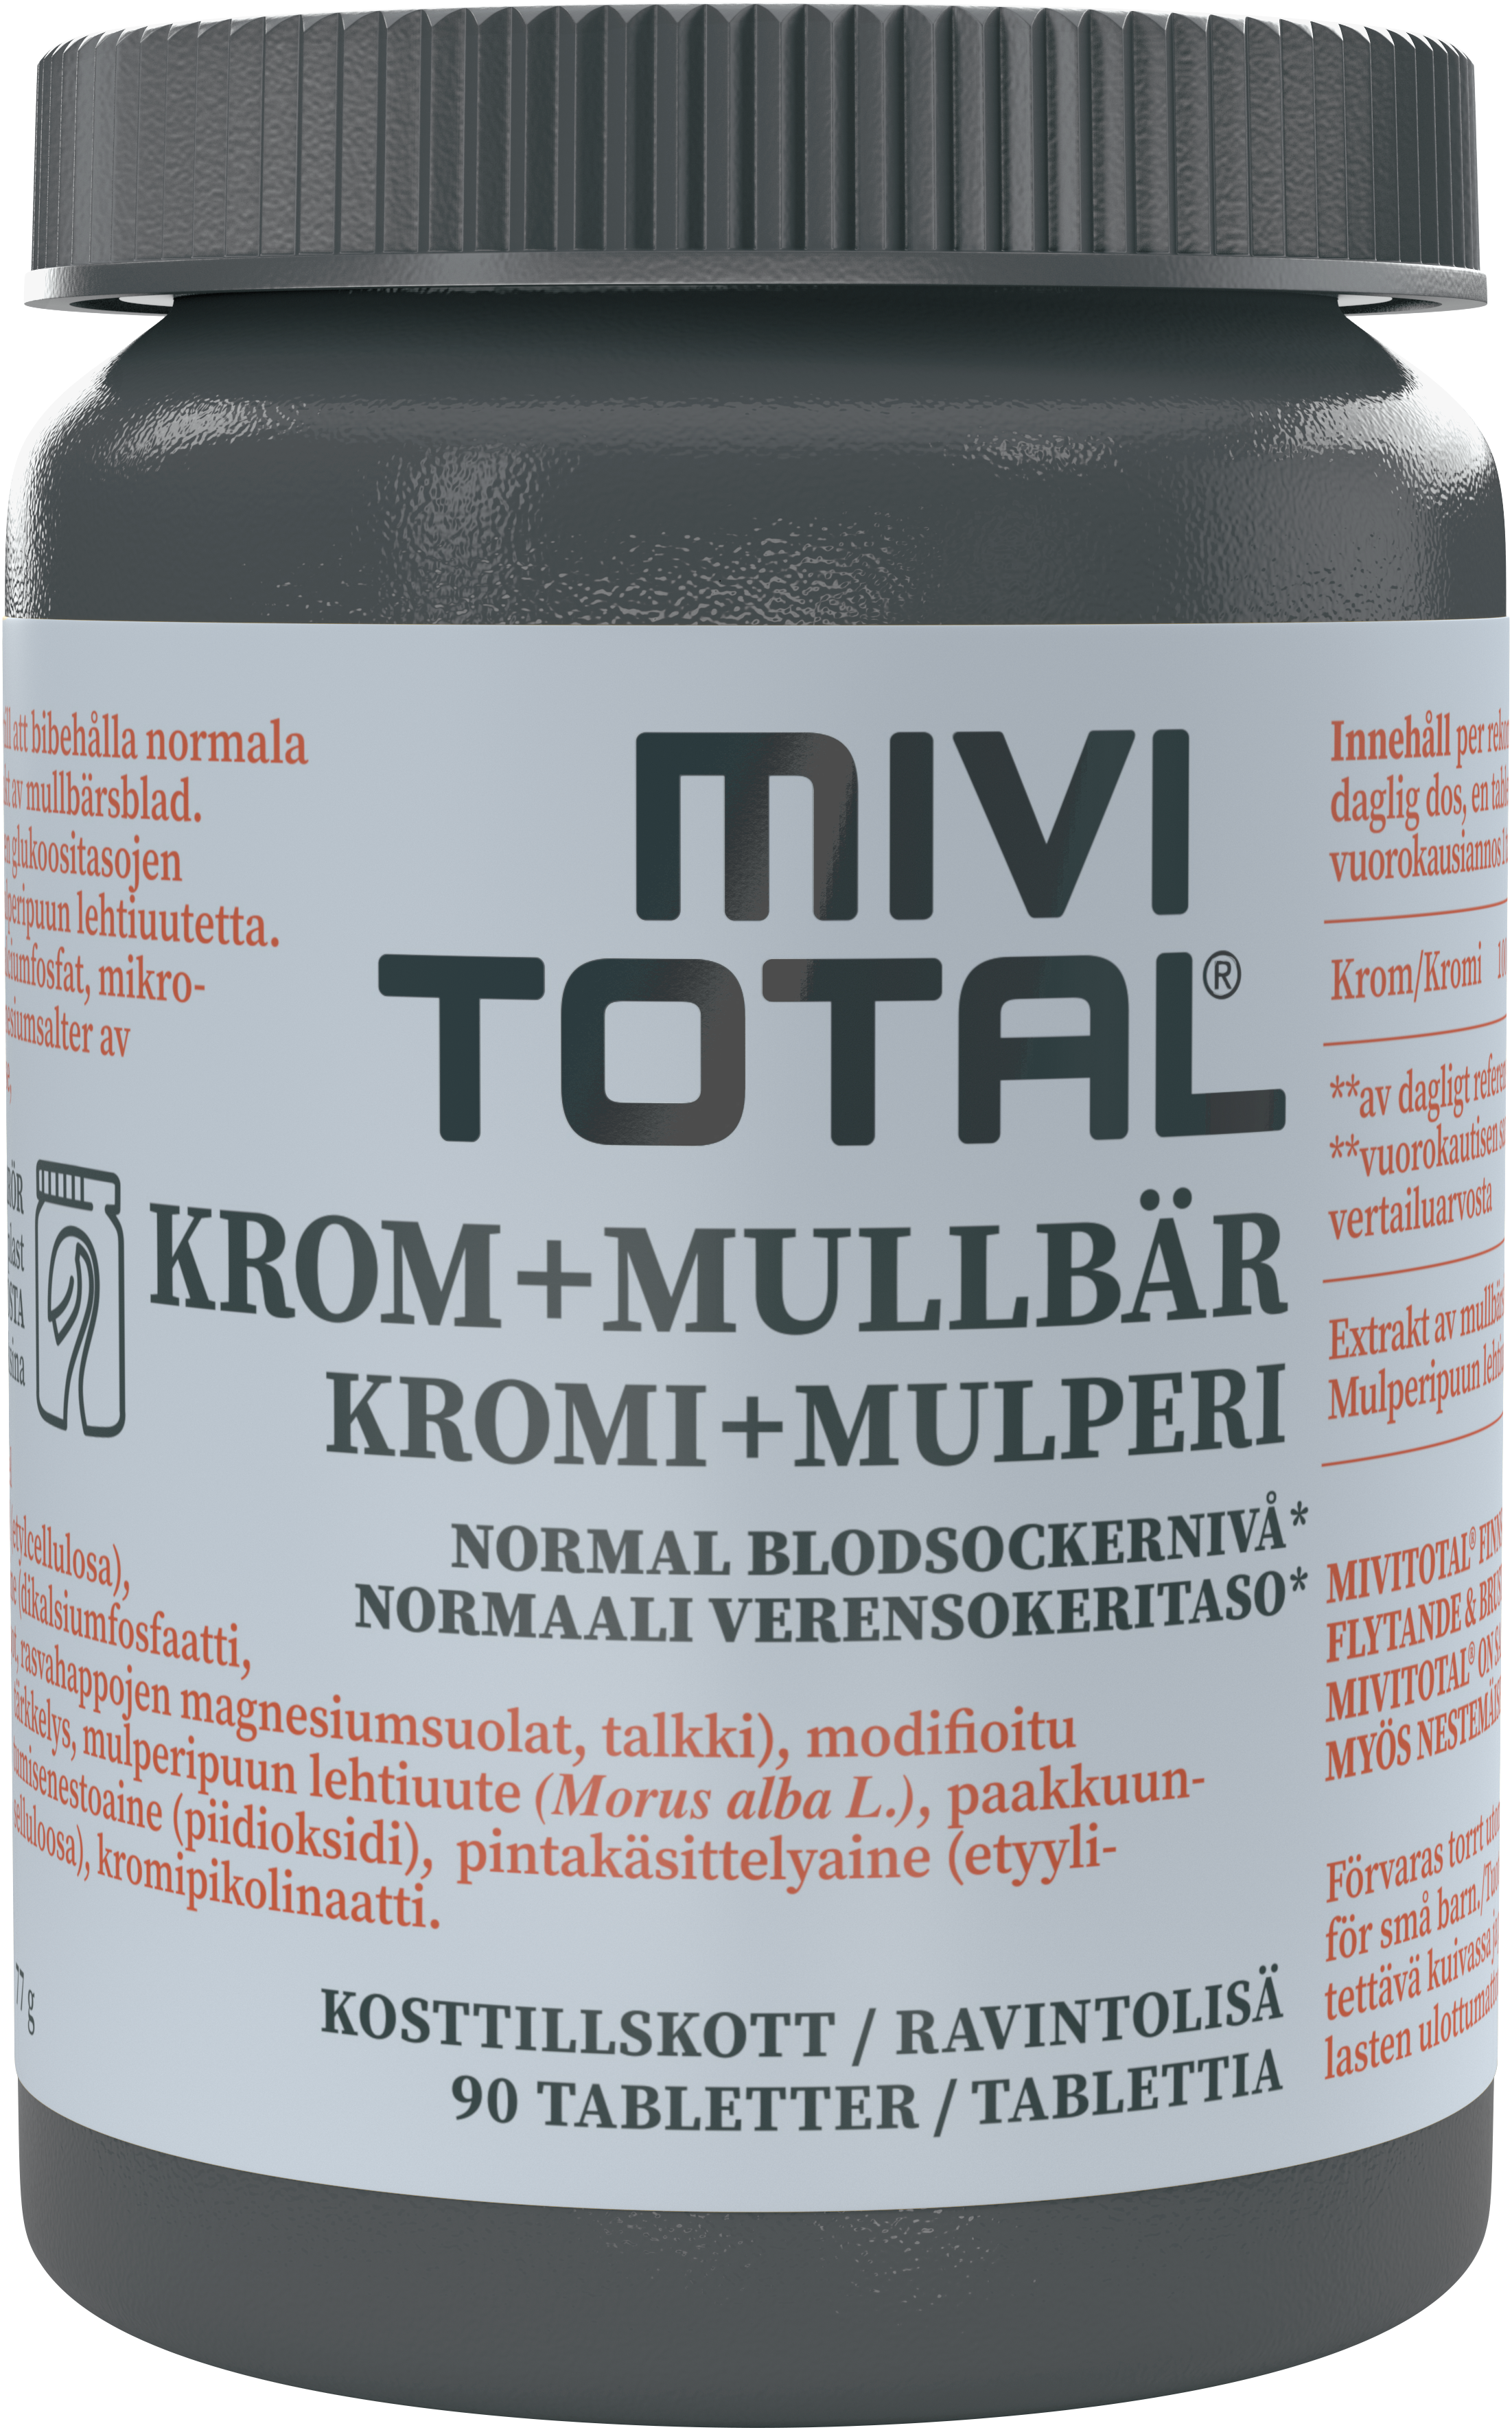 Mivitotal Krom+Mullbär 90 tabletter